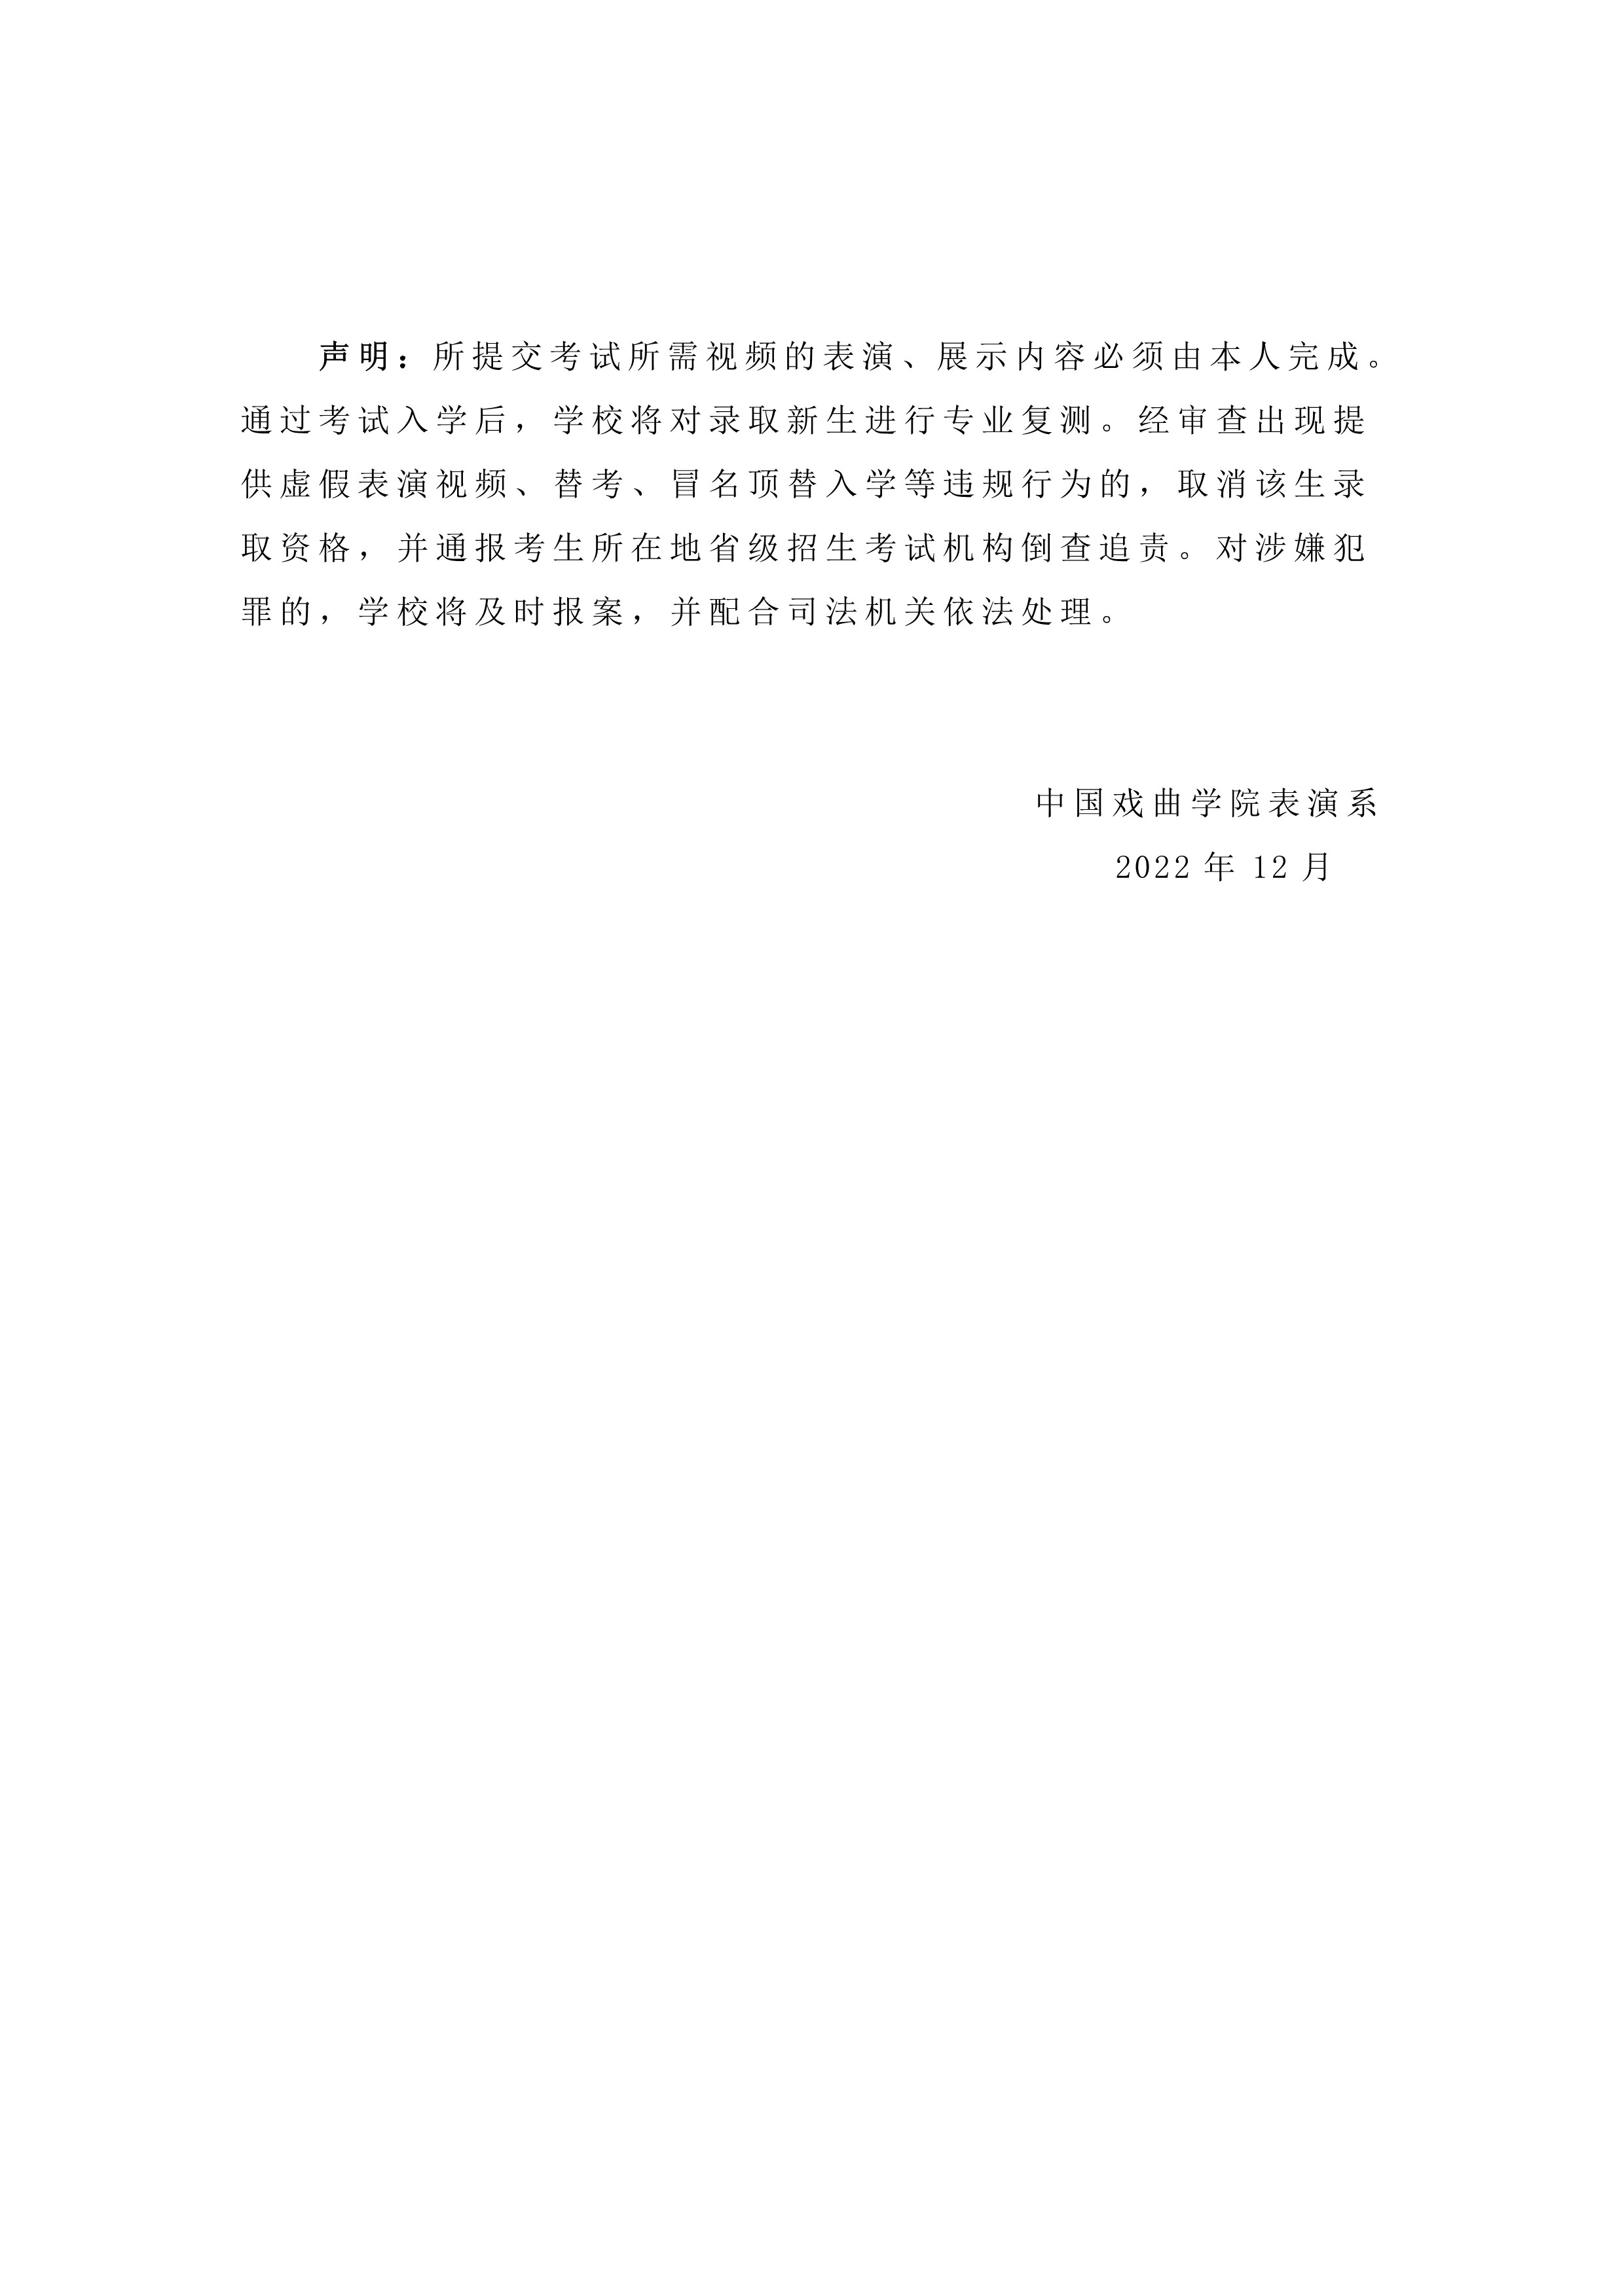 中国戏曲学院2023年本科招生表演系专业考试内容与要求_5.jpg